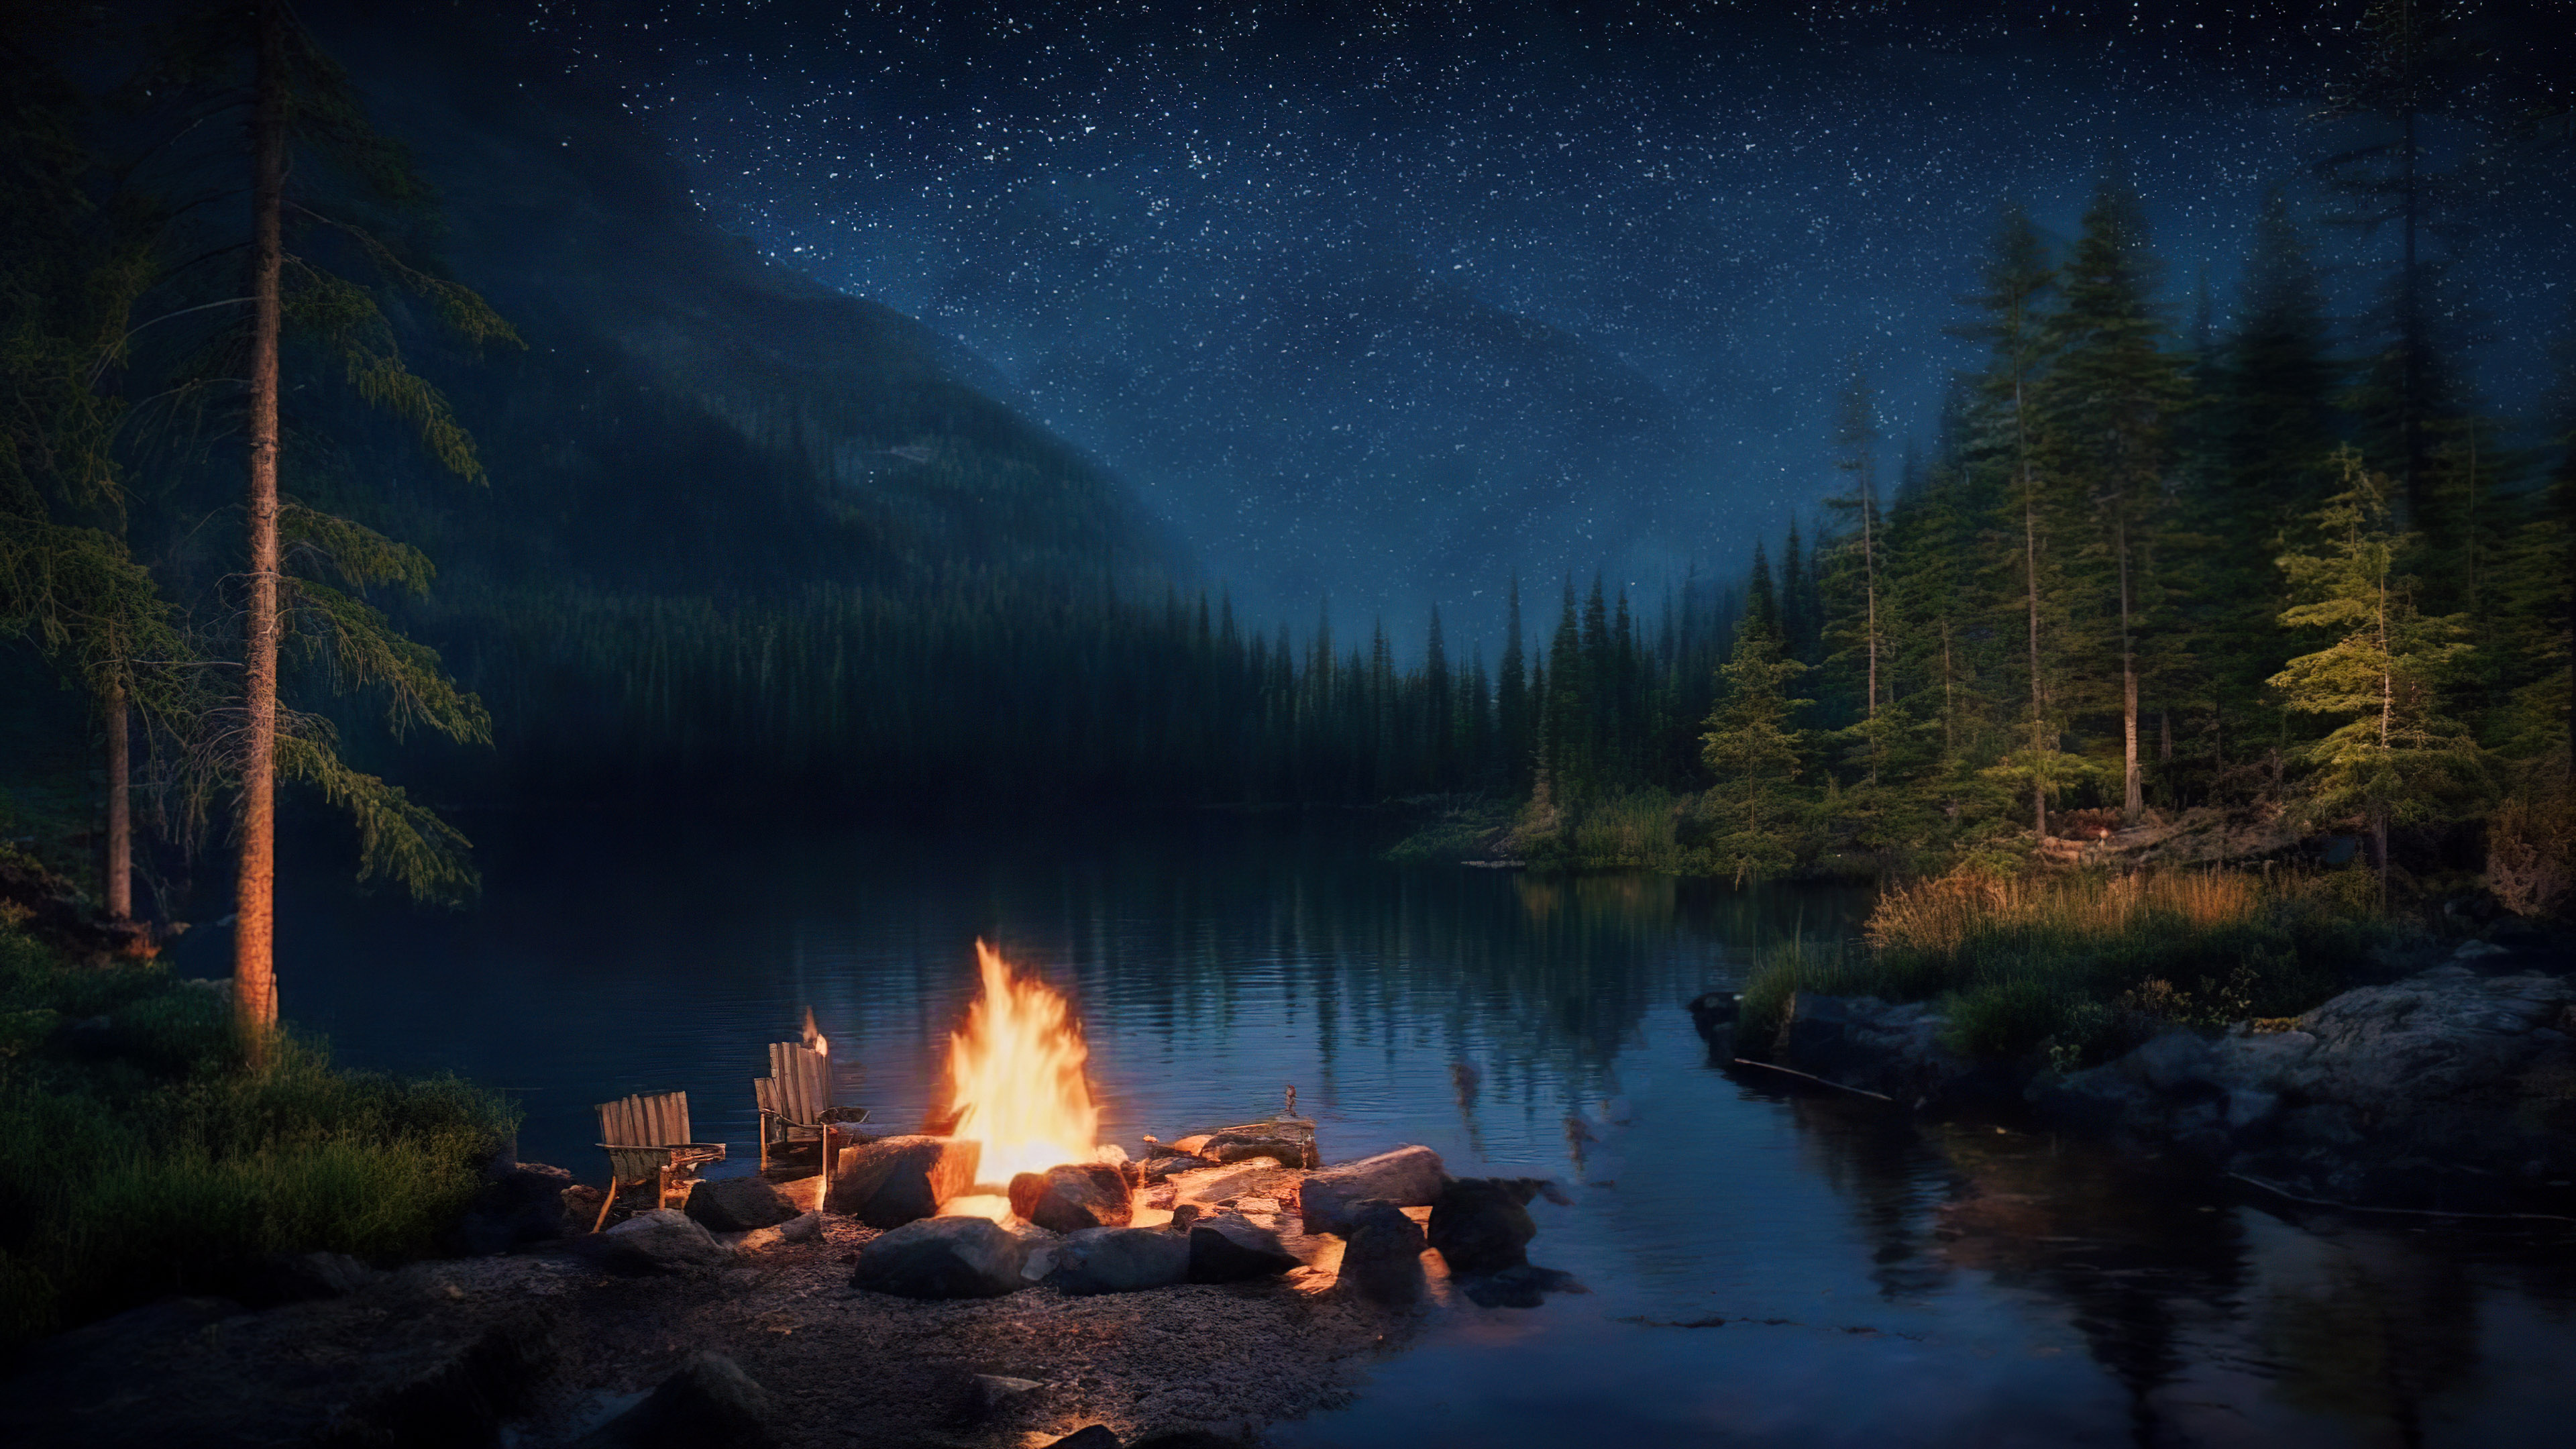 Vivez la sérénité de notre fond de nuit esthétique, présentant un campement au bord d'un lac paisible avec un feu de camp vacillant, entouré d'une forêt sombre et boisée.